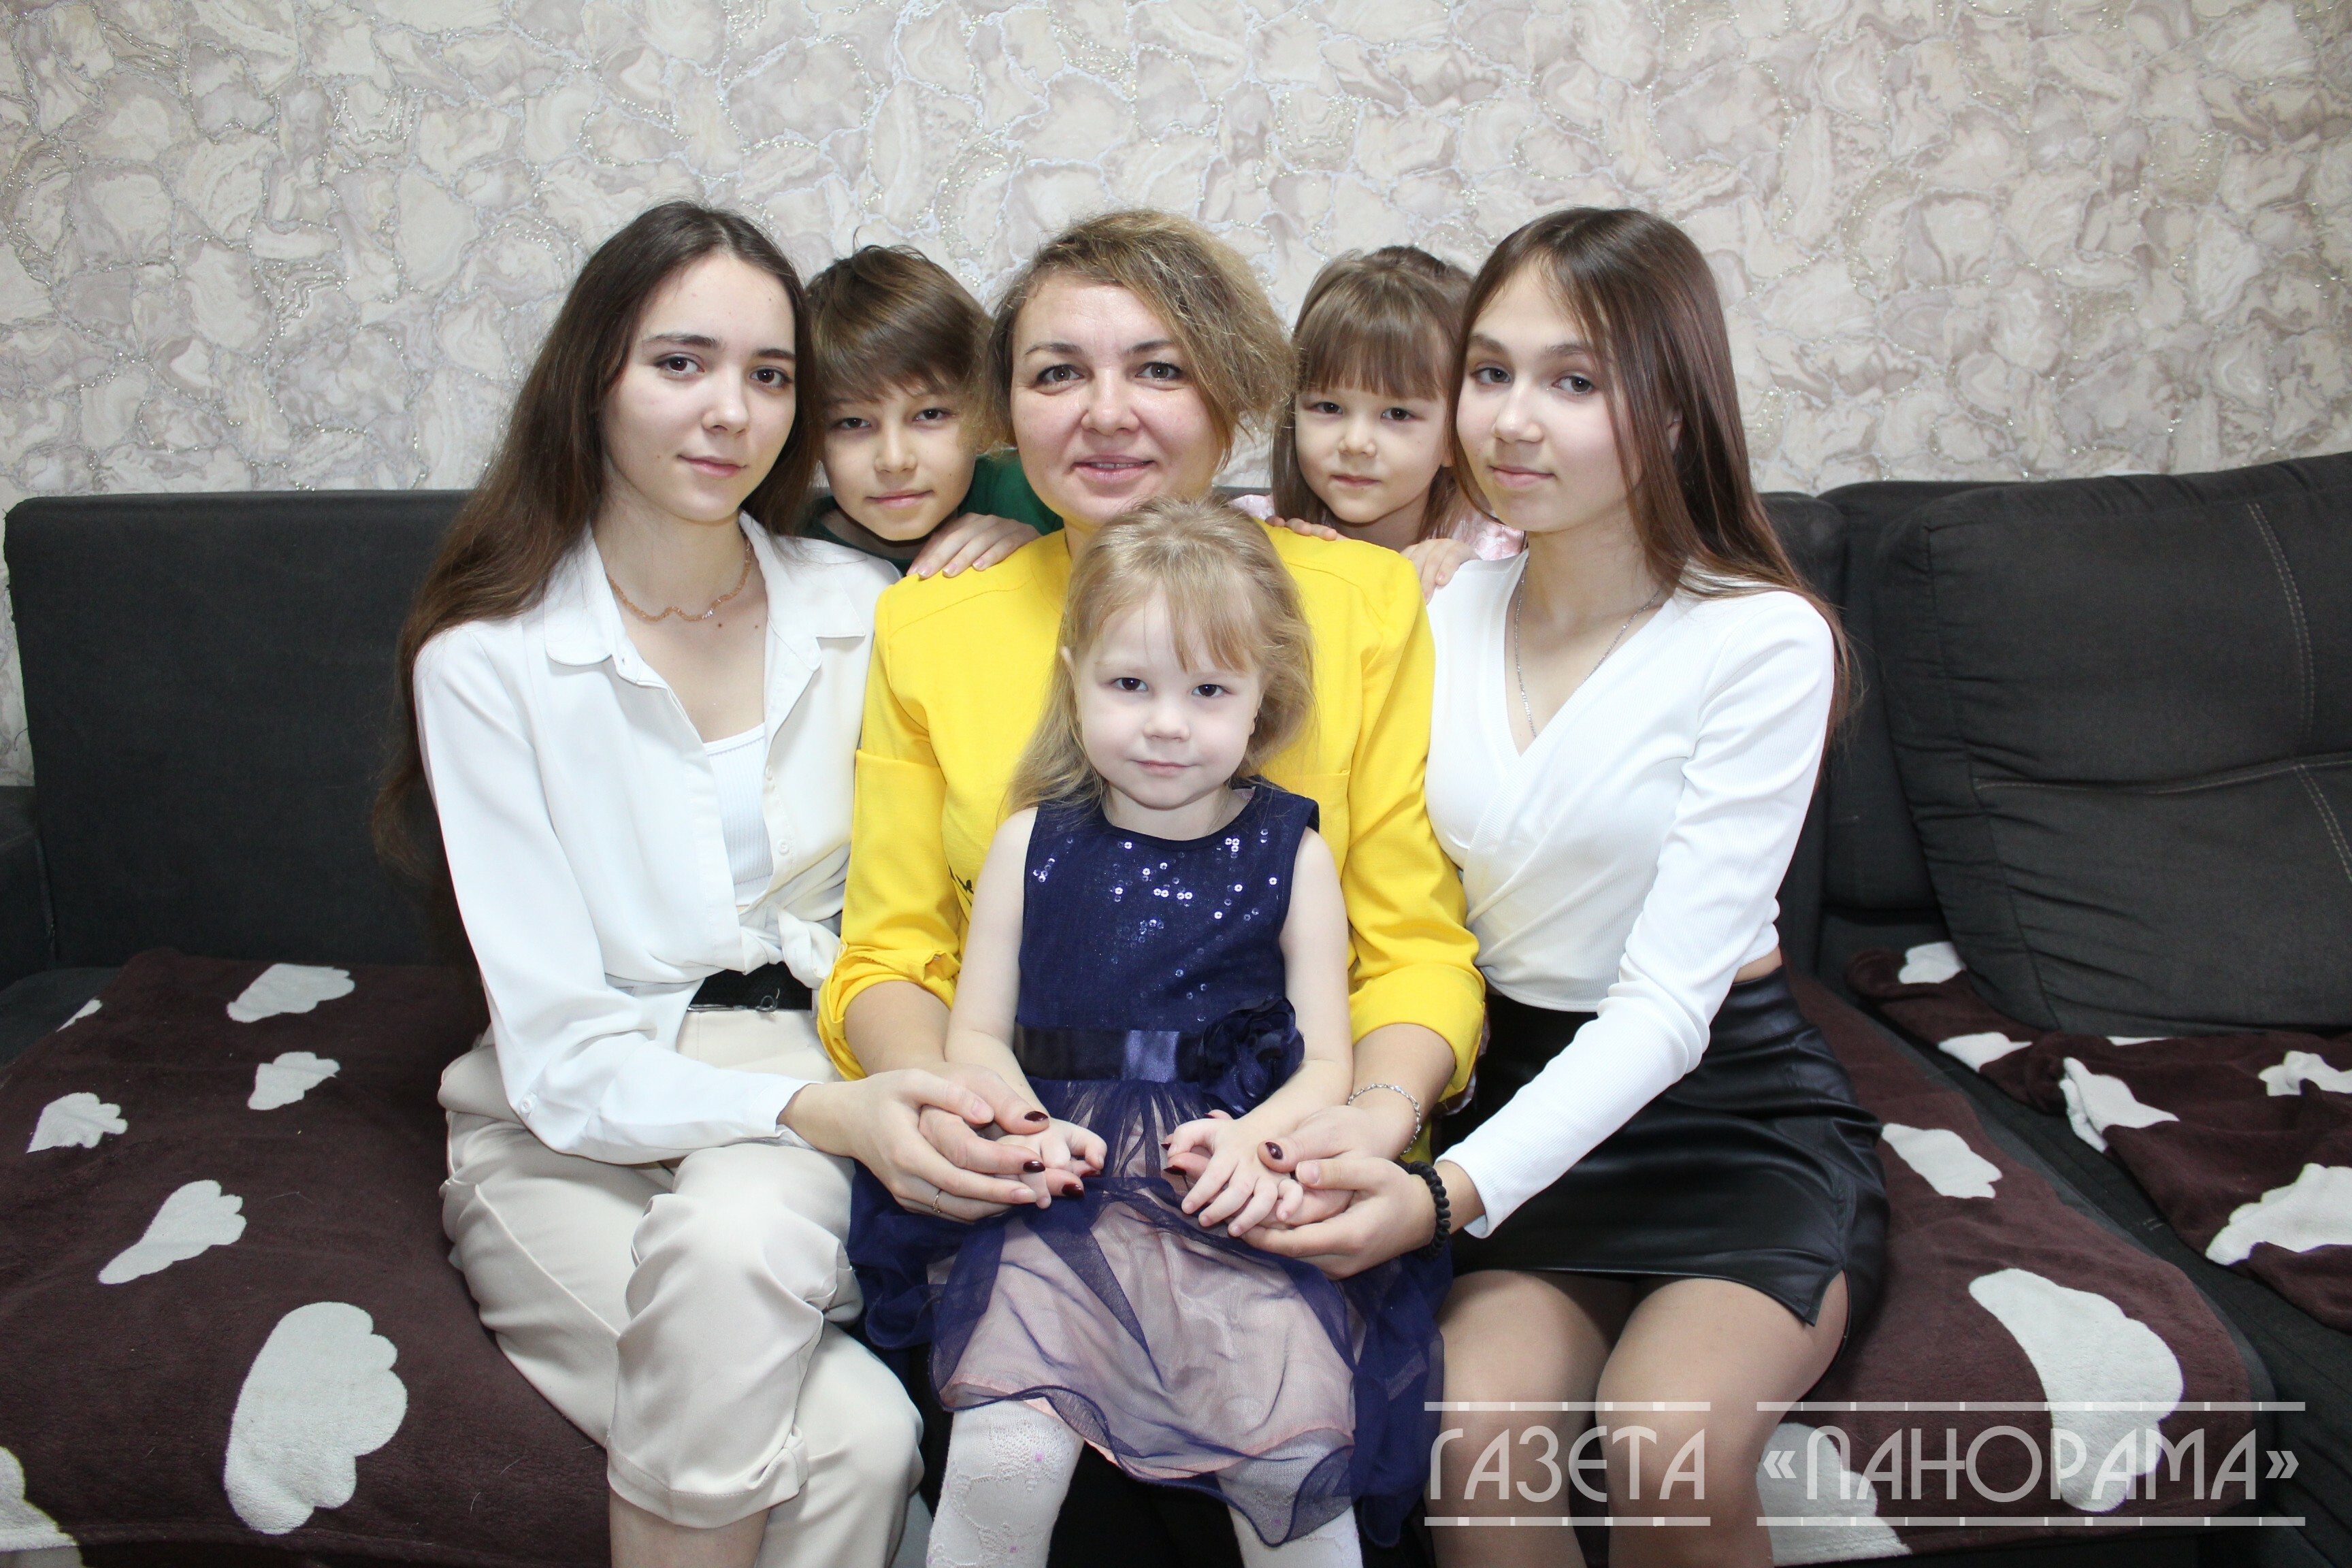 Многодетная мама из Башкирии удостоена высокой награды